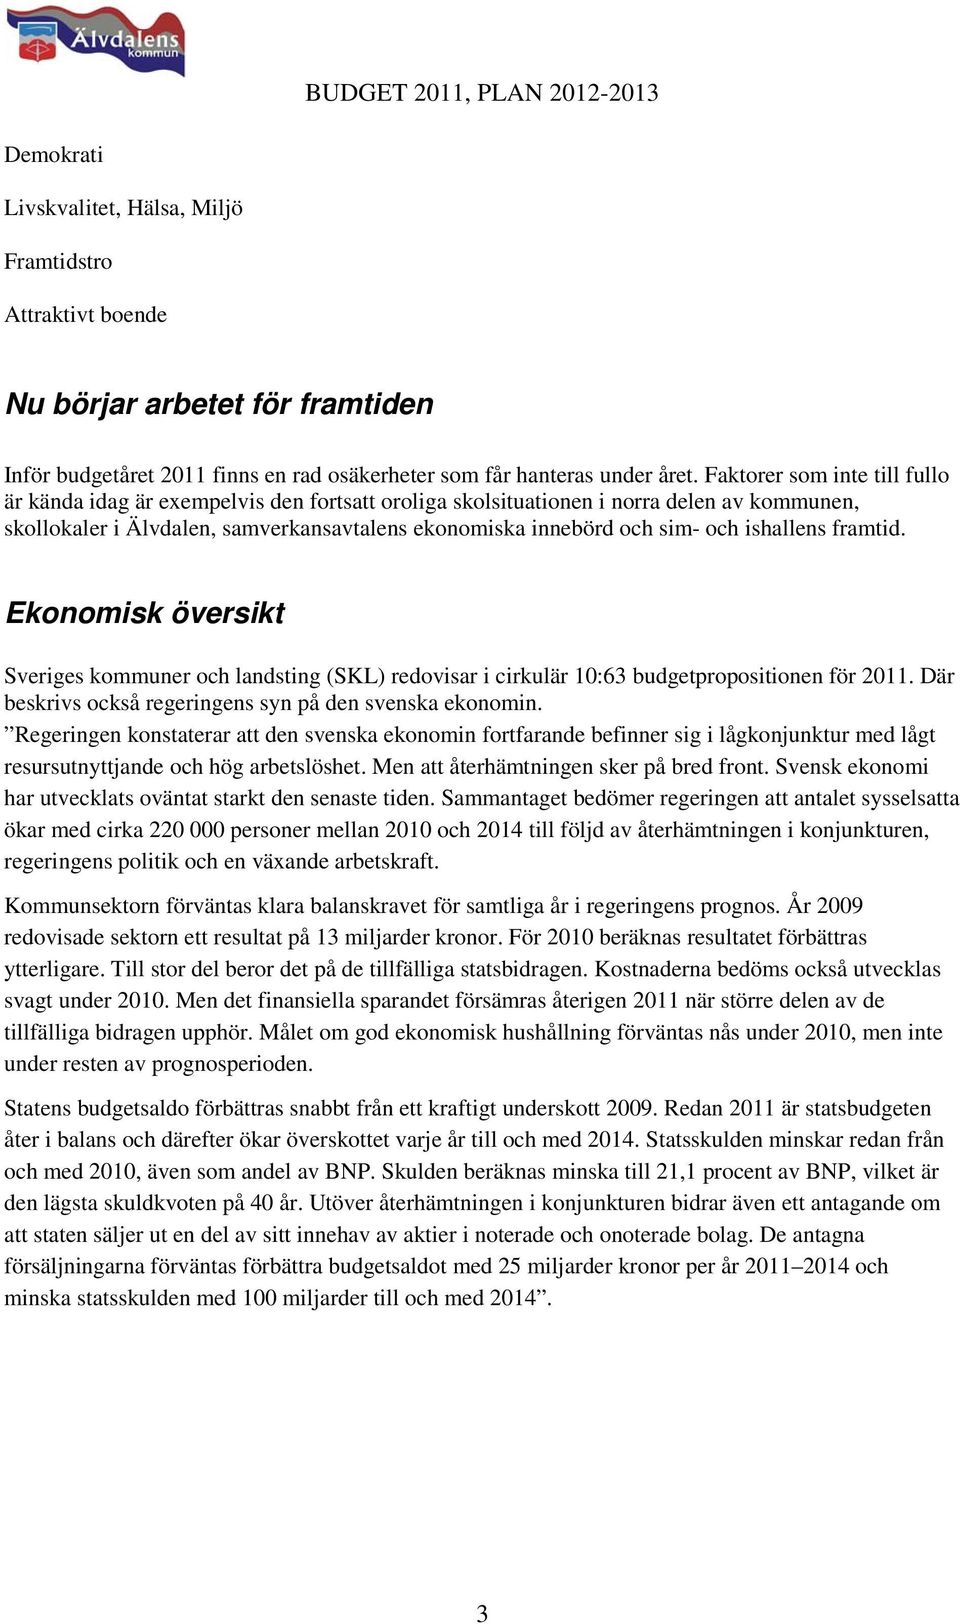 ishallens framtid. Ekonomisk översikt Sveriges kommuner och landsting (SKL) redovisar i cirkulär 10:63 budgetpropositionen för 2011. Där beskrivs också regeringens syn på den svenska ekonomin.